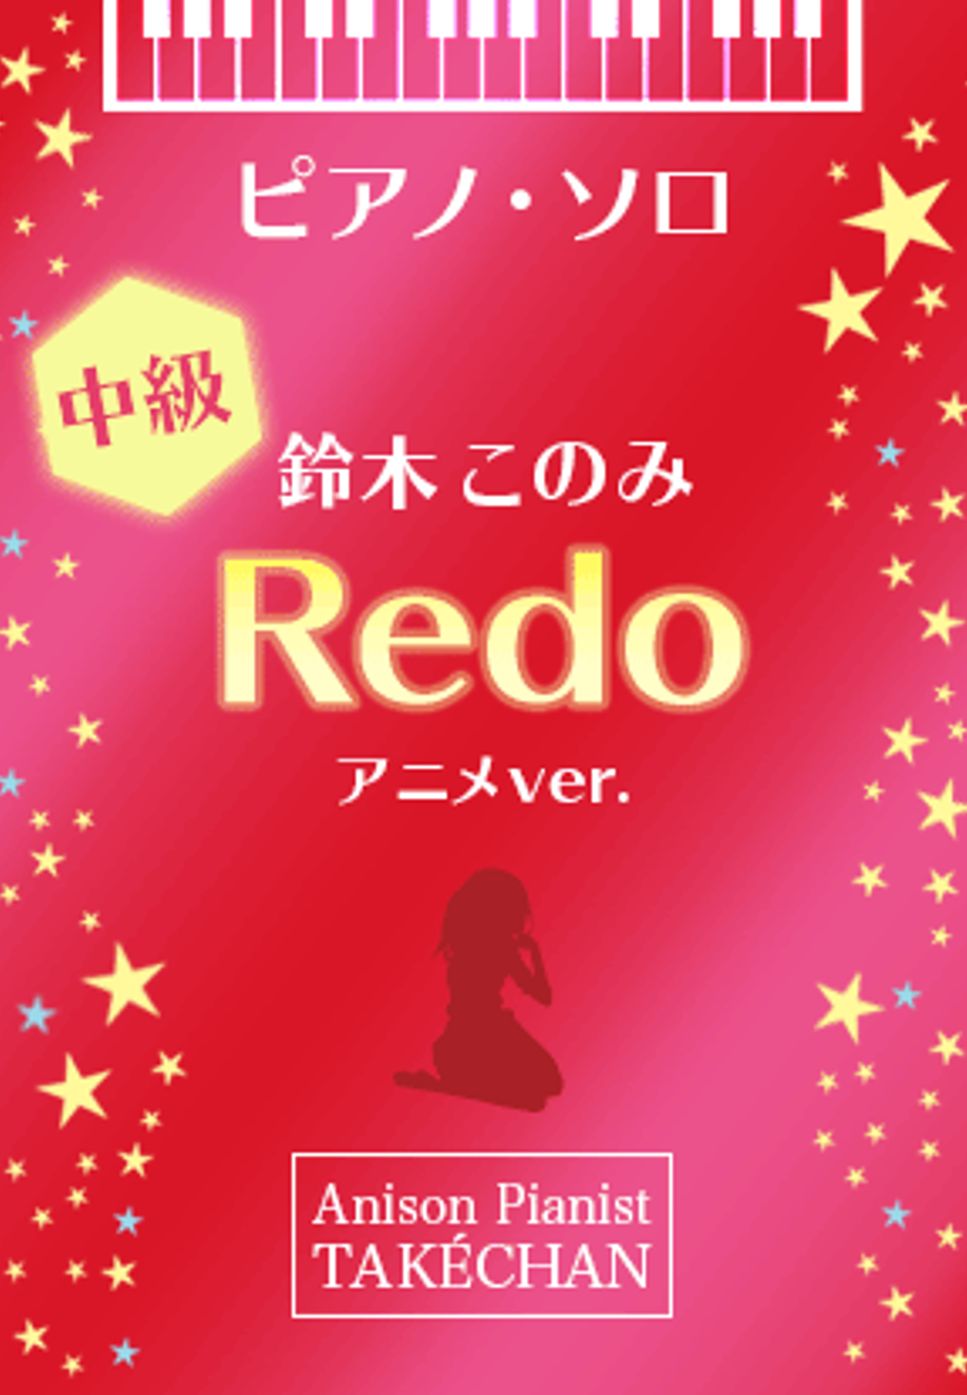 鈴木このみ - Redo by TAKÈCHAN